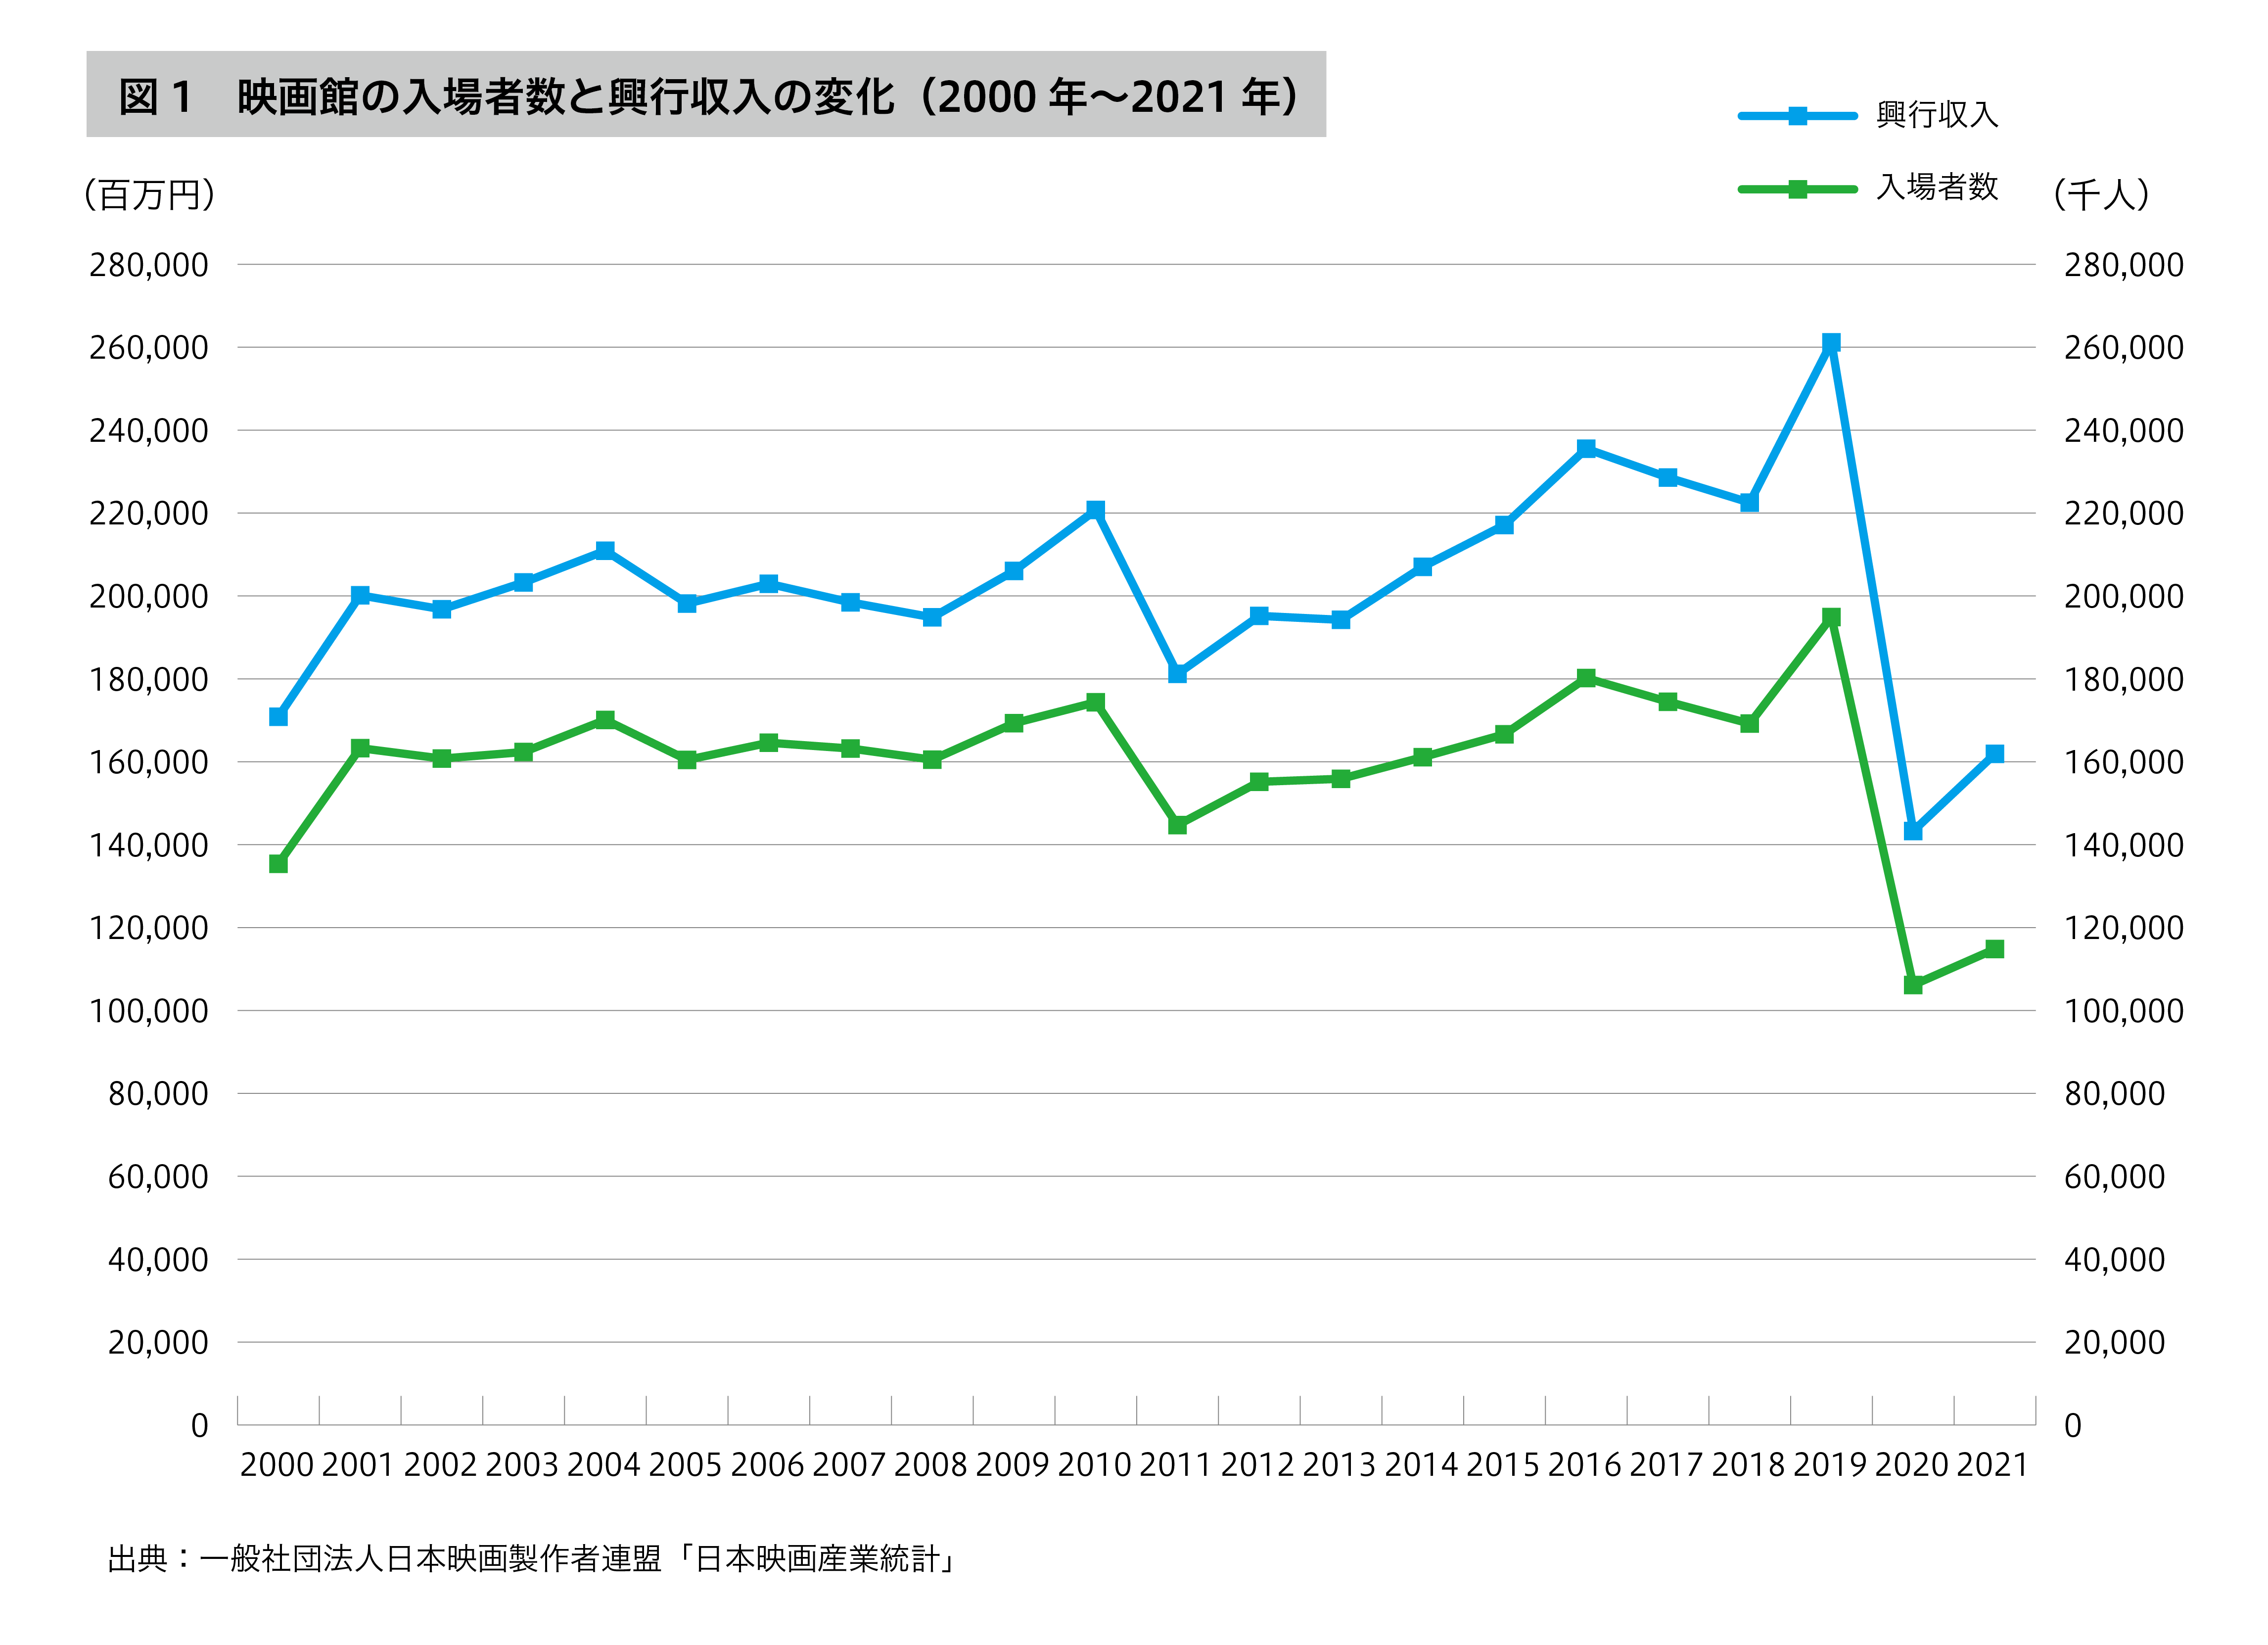 映画館の入場者数と興行収入の変化（2000年〜2021年）